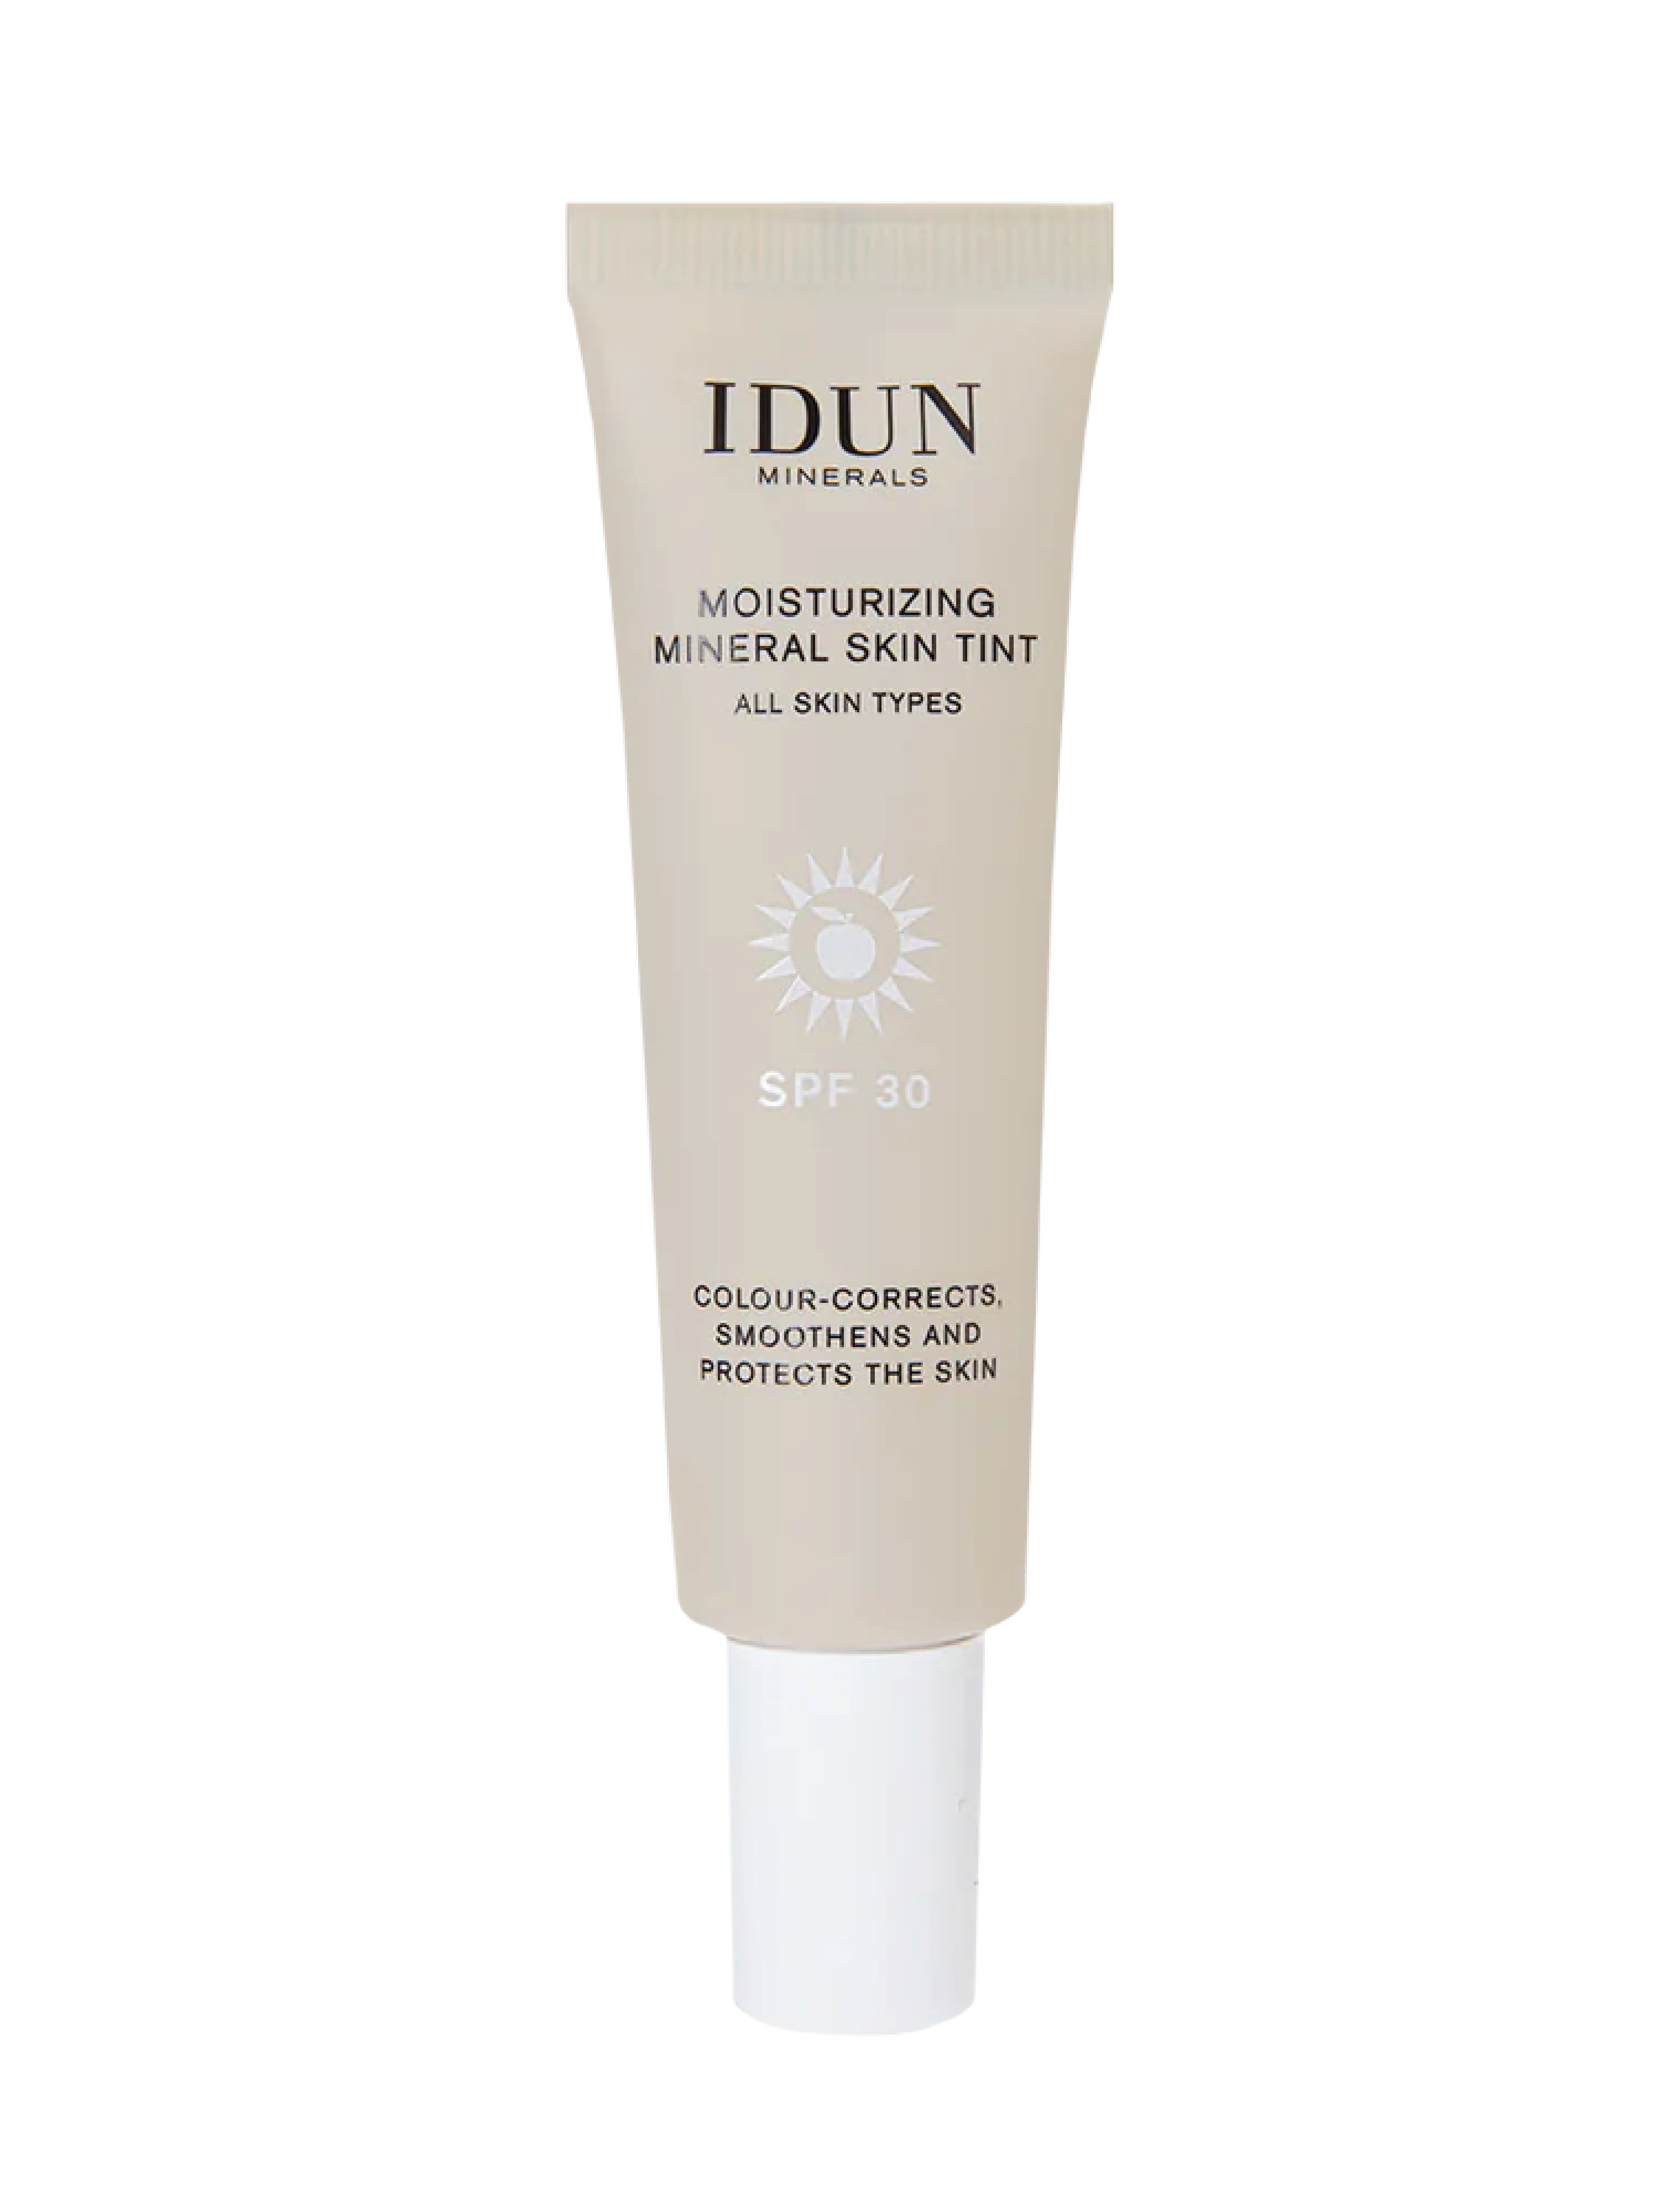 IDUN Minerals Moisturizing Mineral Skin Tint SPF 30, Medium, 27 ml